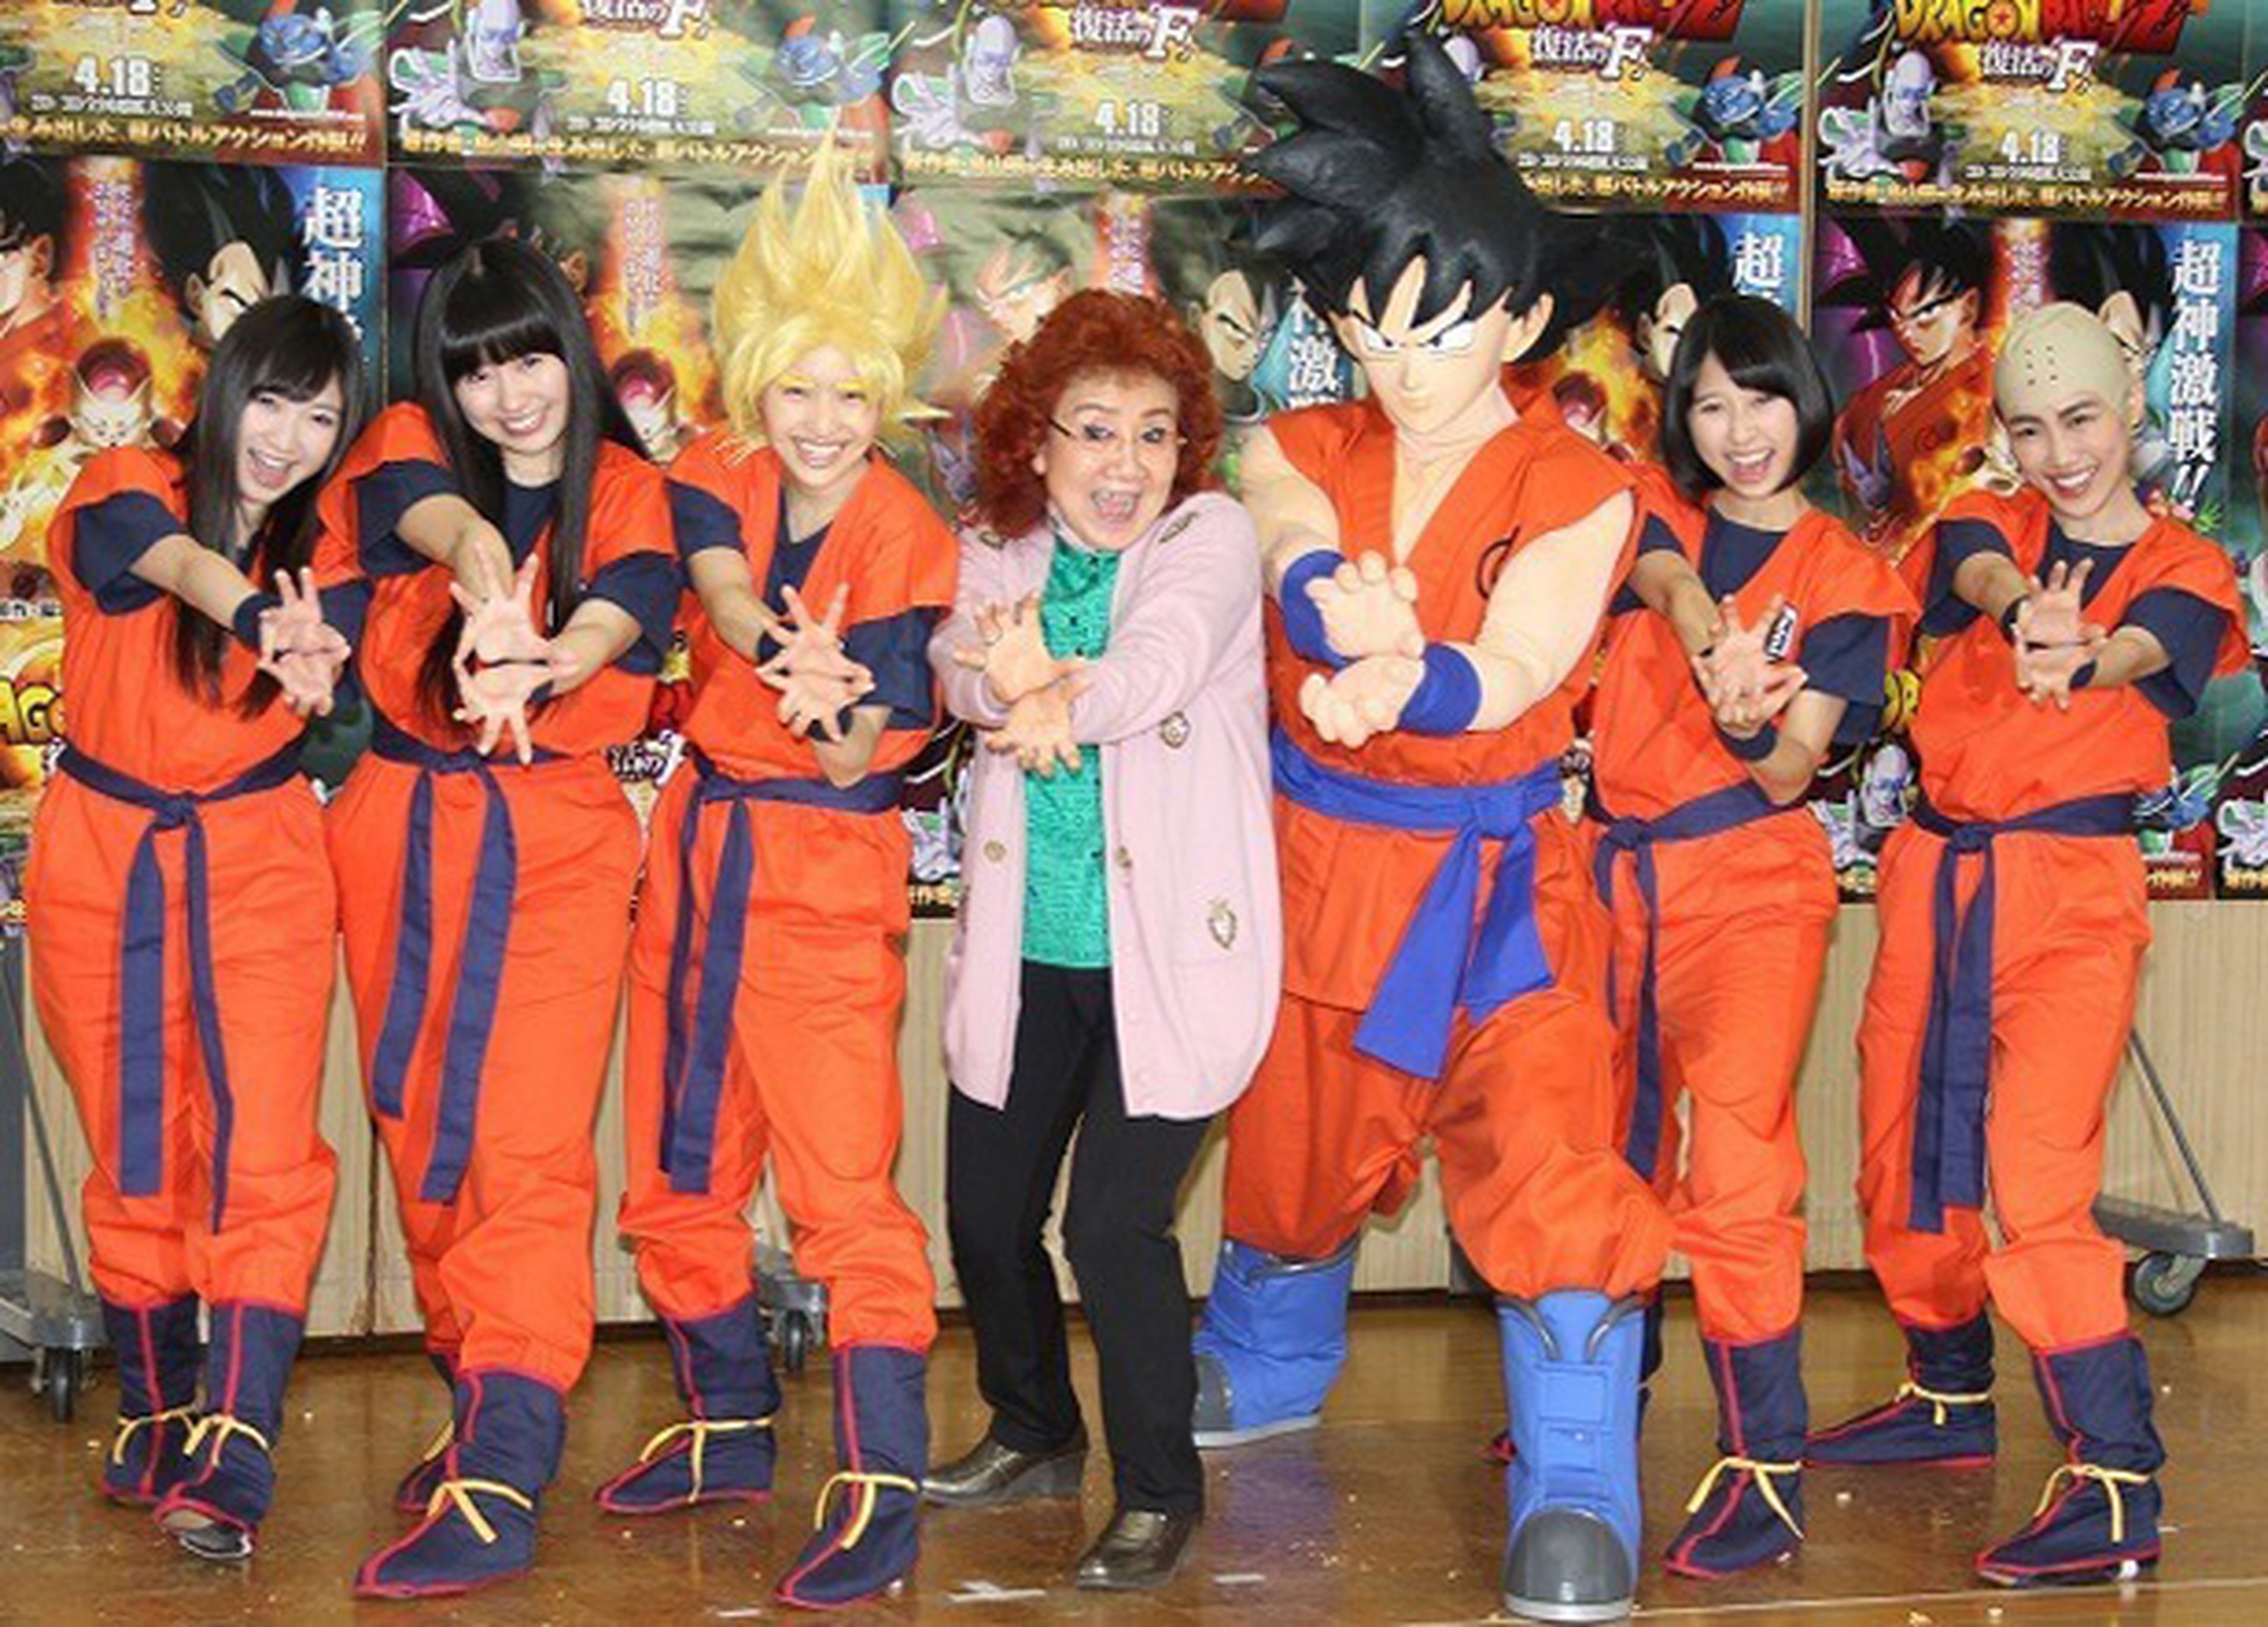 Dragon Ball Z Fukkatsu no F: Las idols Momoiro Clover Z aparecerán en la peli